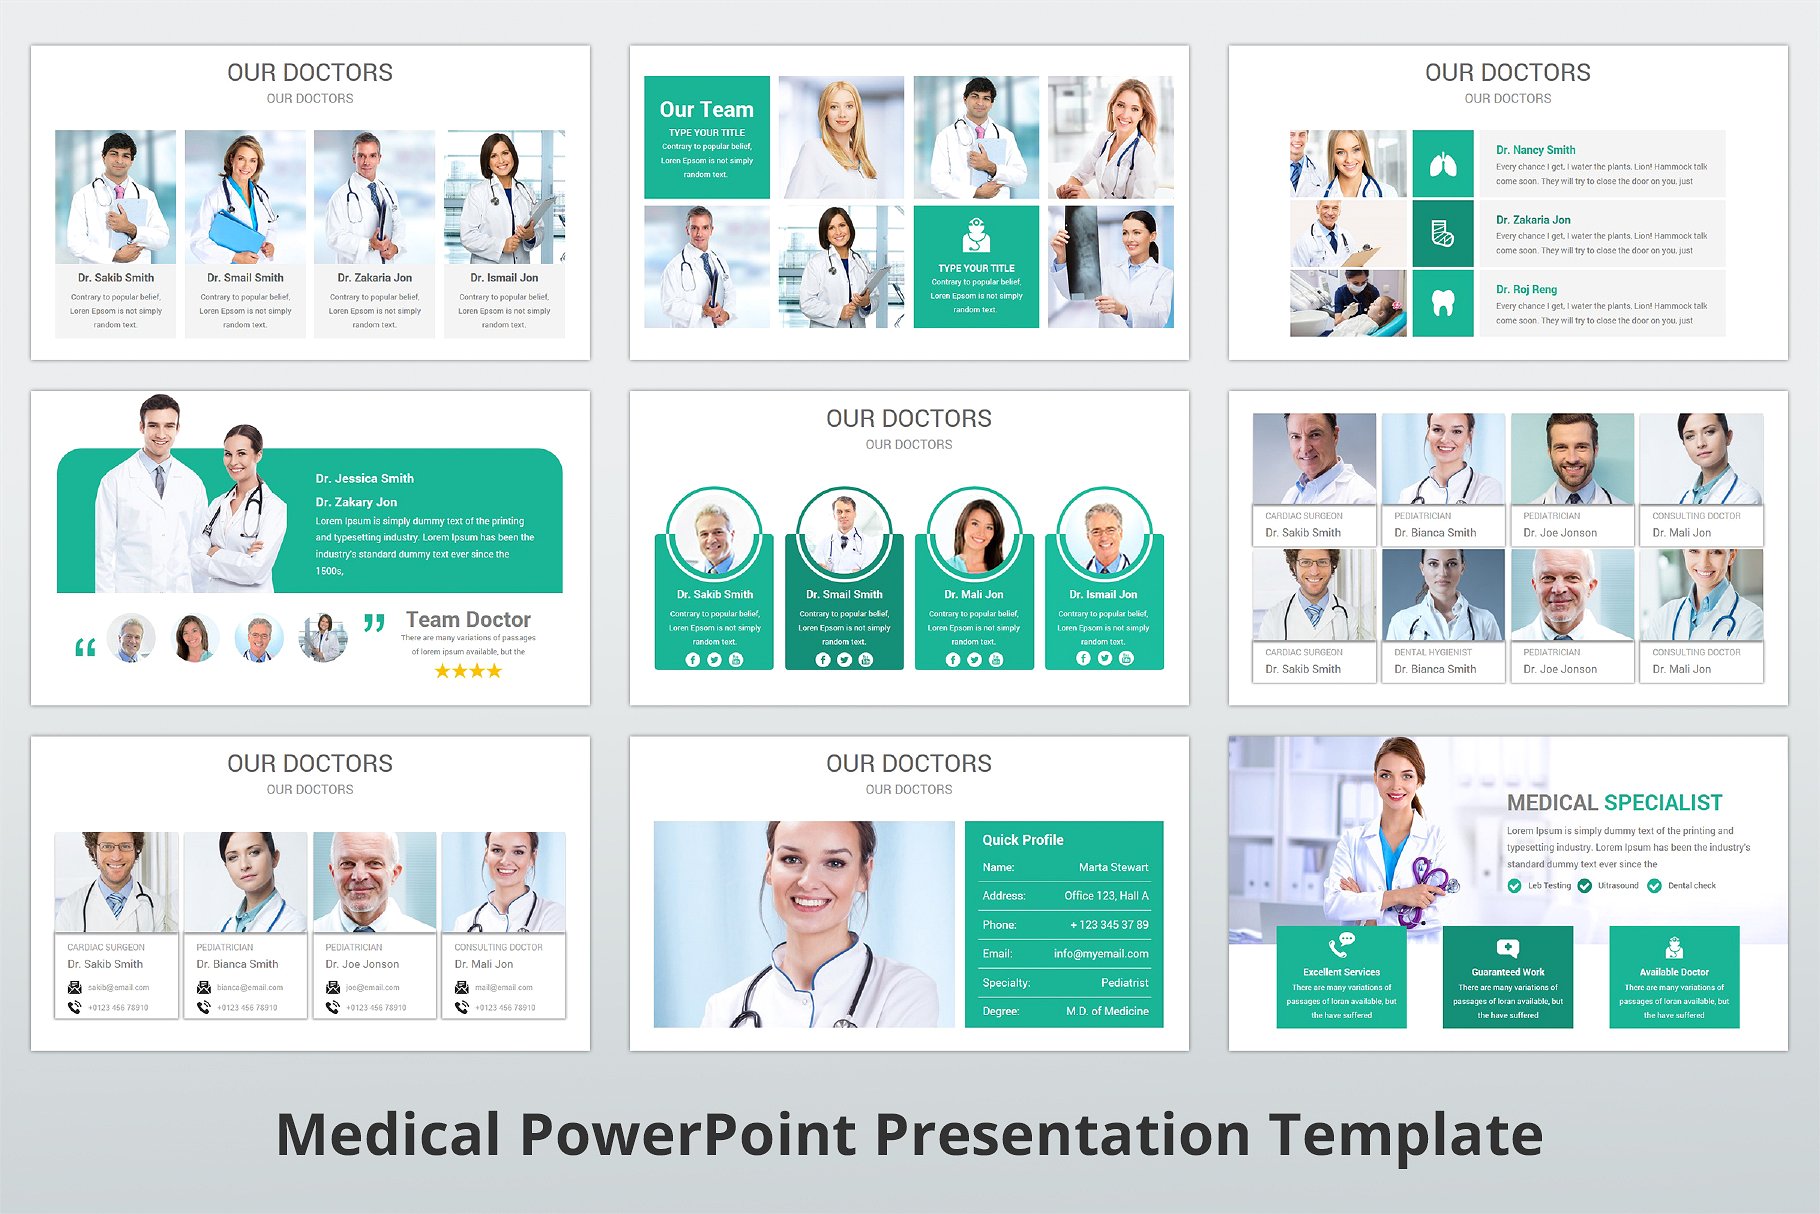 高品质医疗行业演示的PPT模板下载 Medical PowerPoint Template [pptx]插图(8)